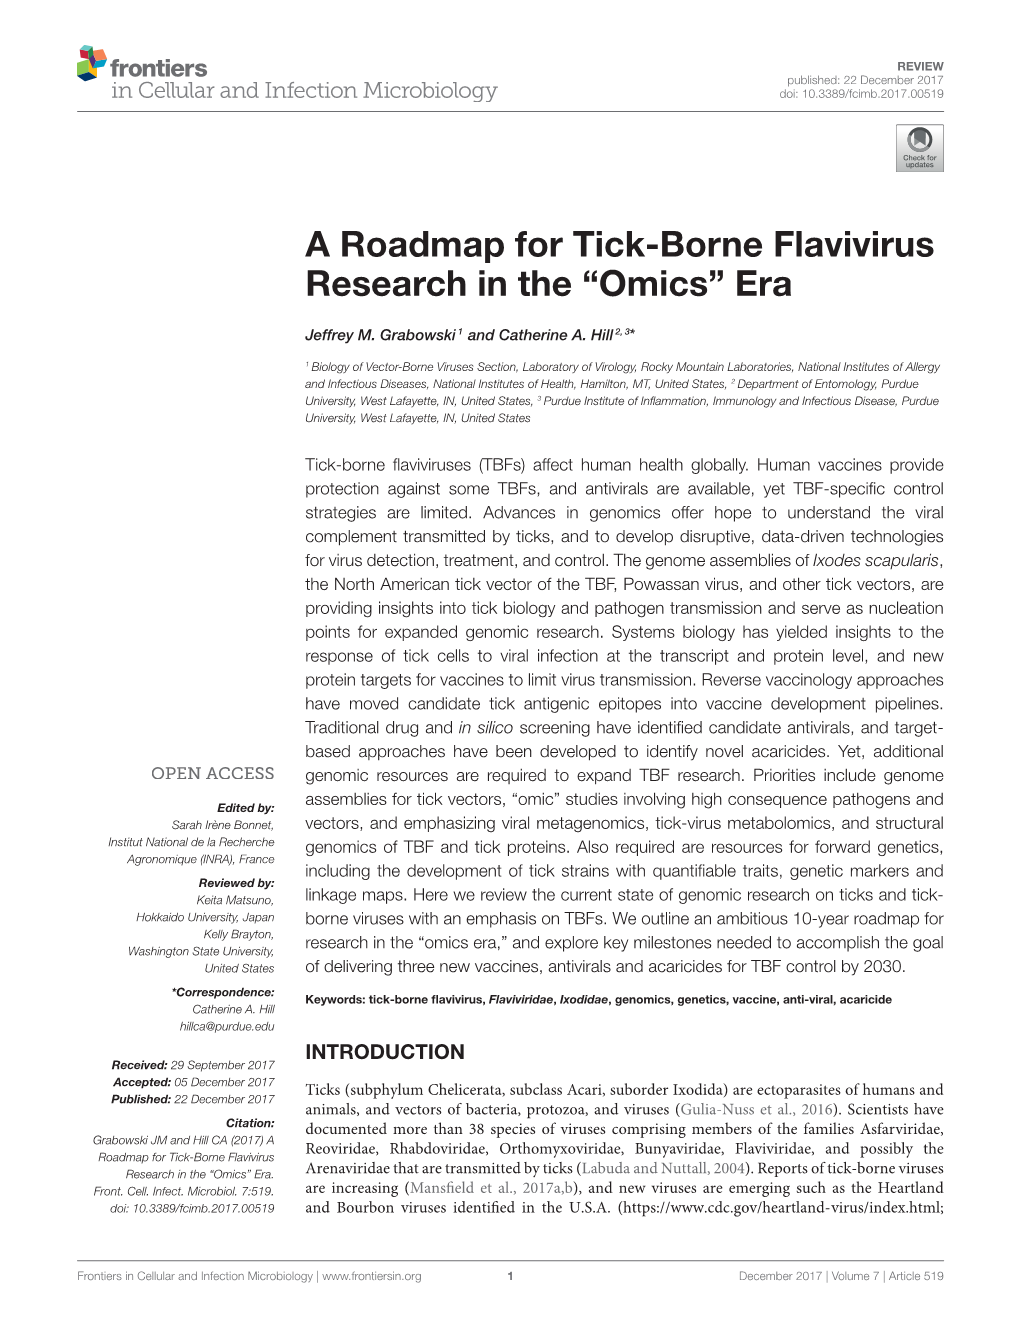 A Roadmap for Tick-Borne Flavivirus Research in the “Omics” Era